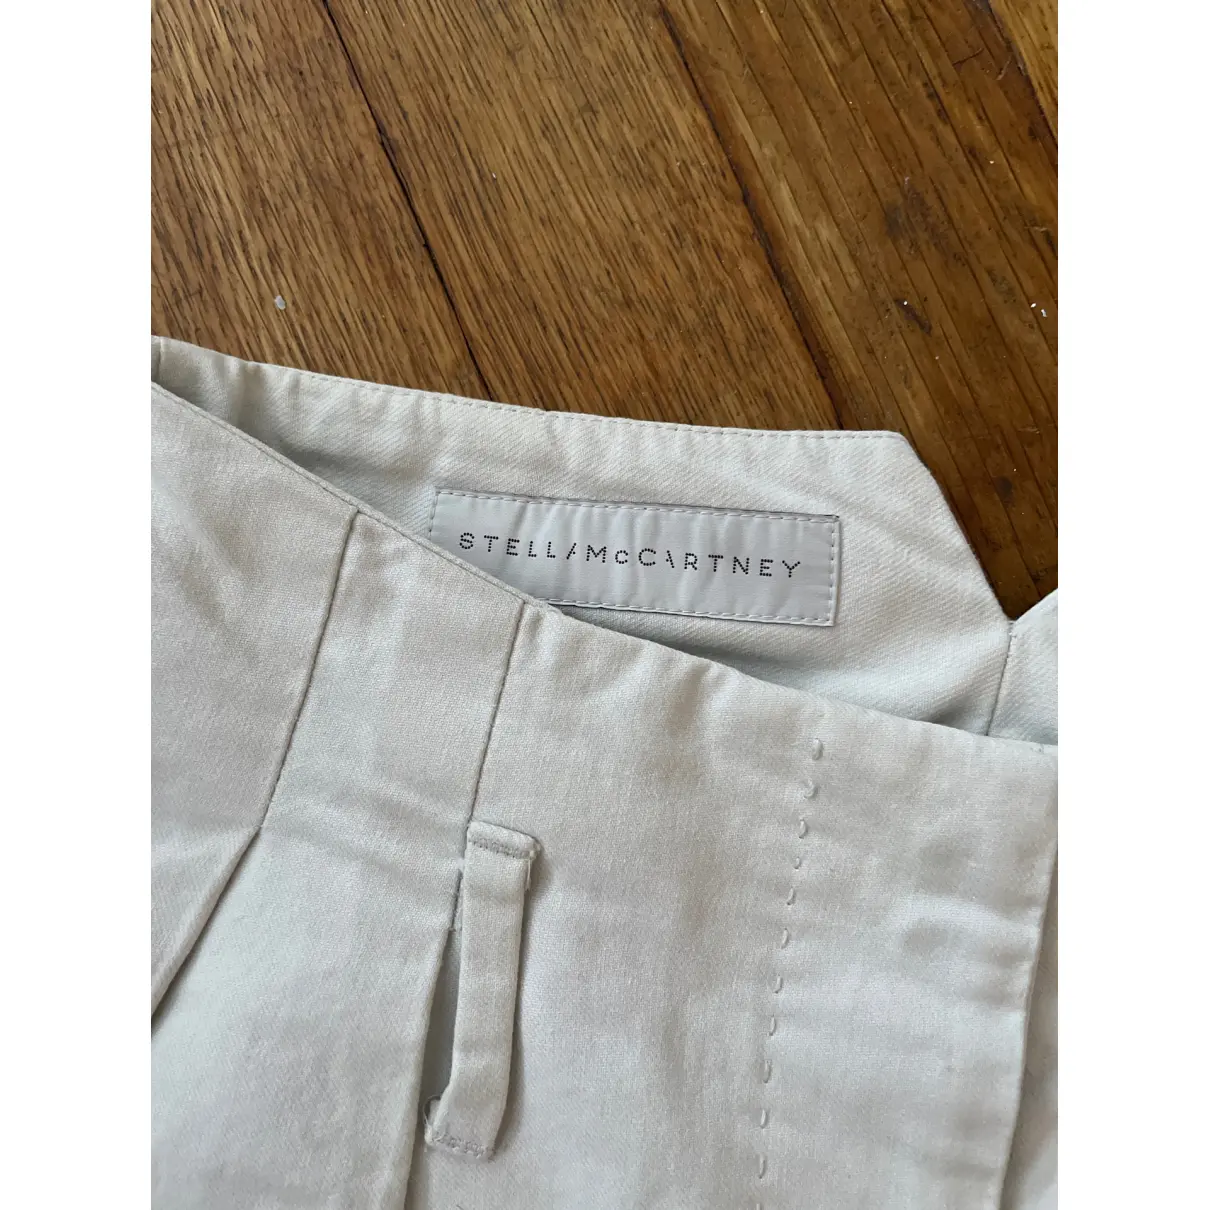 Buy Stella McCartney Trousers online